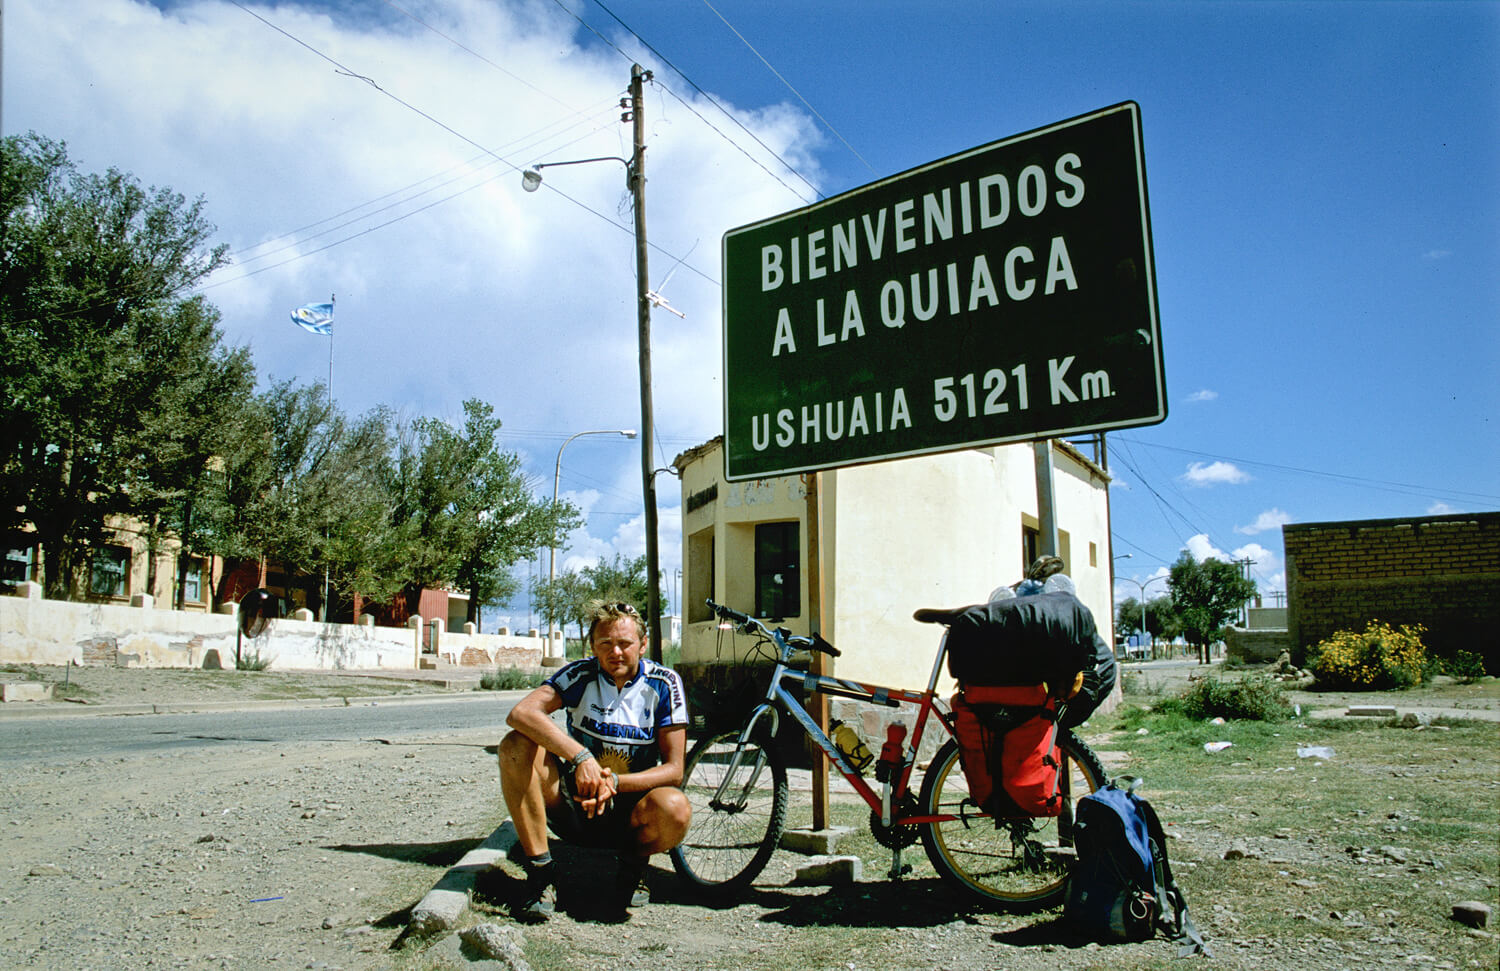 wyprawa rowerowa po Ameryce Południowej, wyprawa rowerowa, gap year, mietek małek